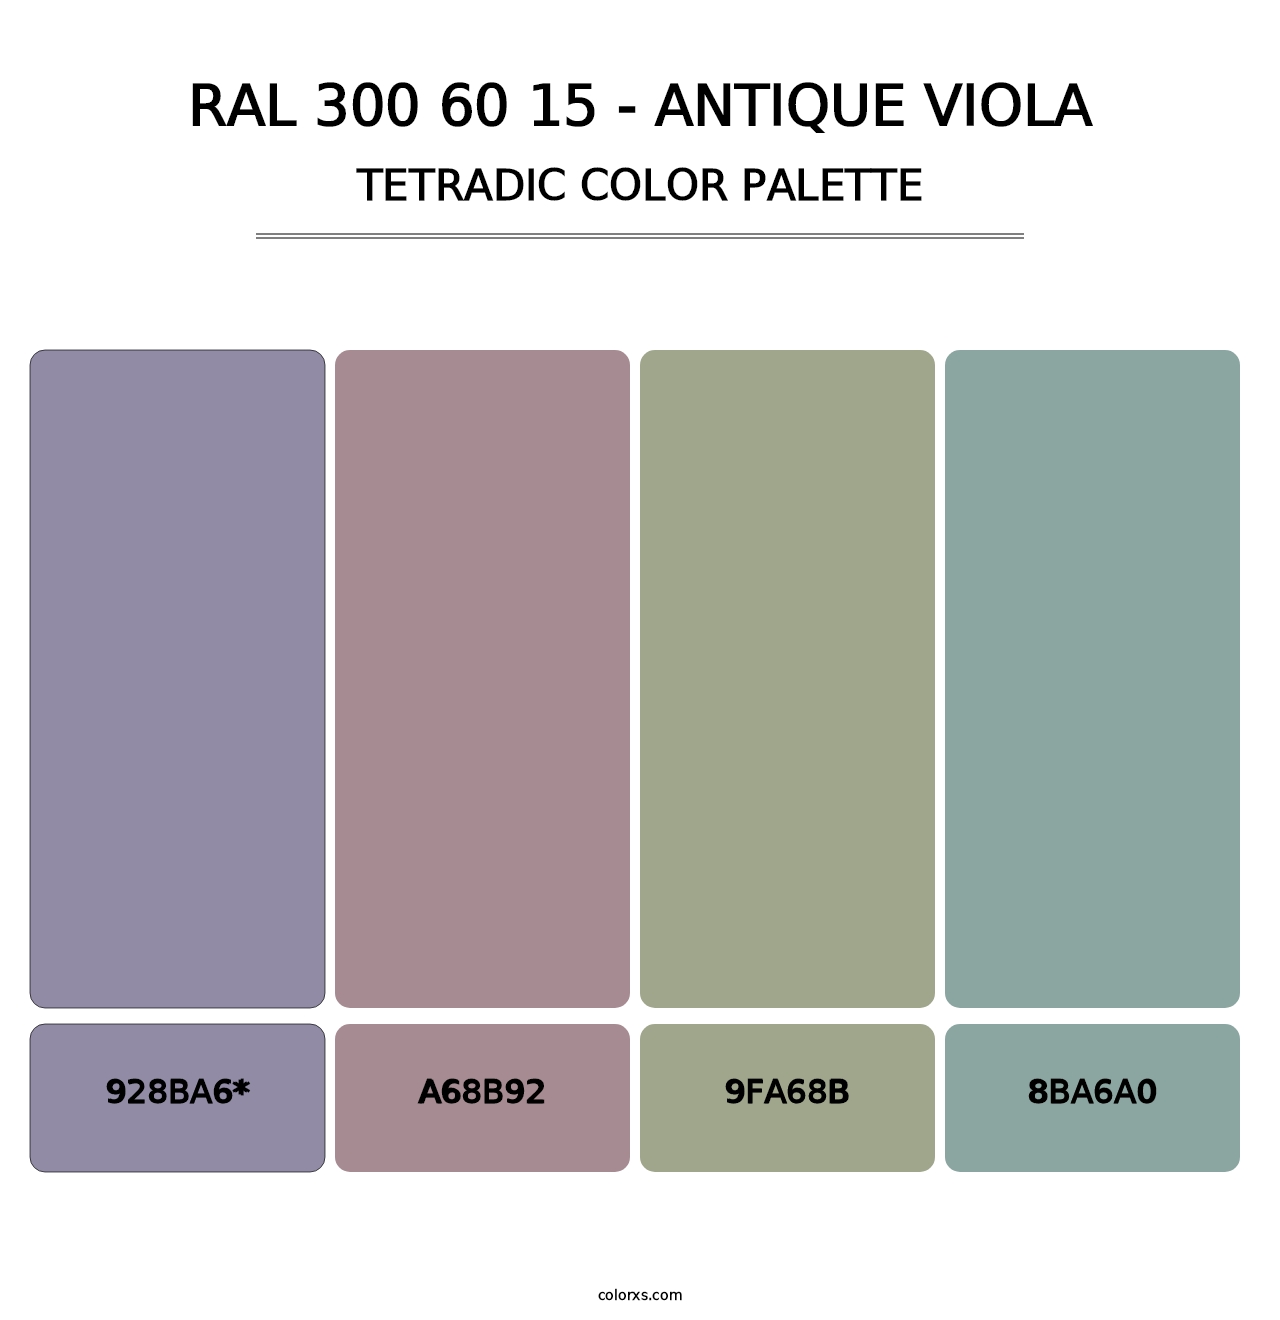 RAL 300 60 15 - Antique Viola - Tetradic Color Palette